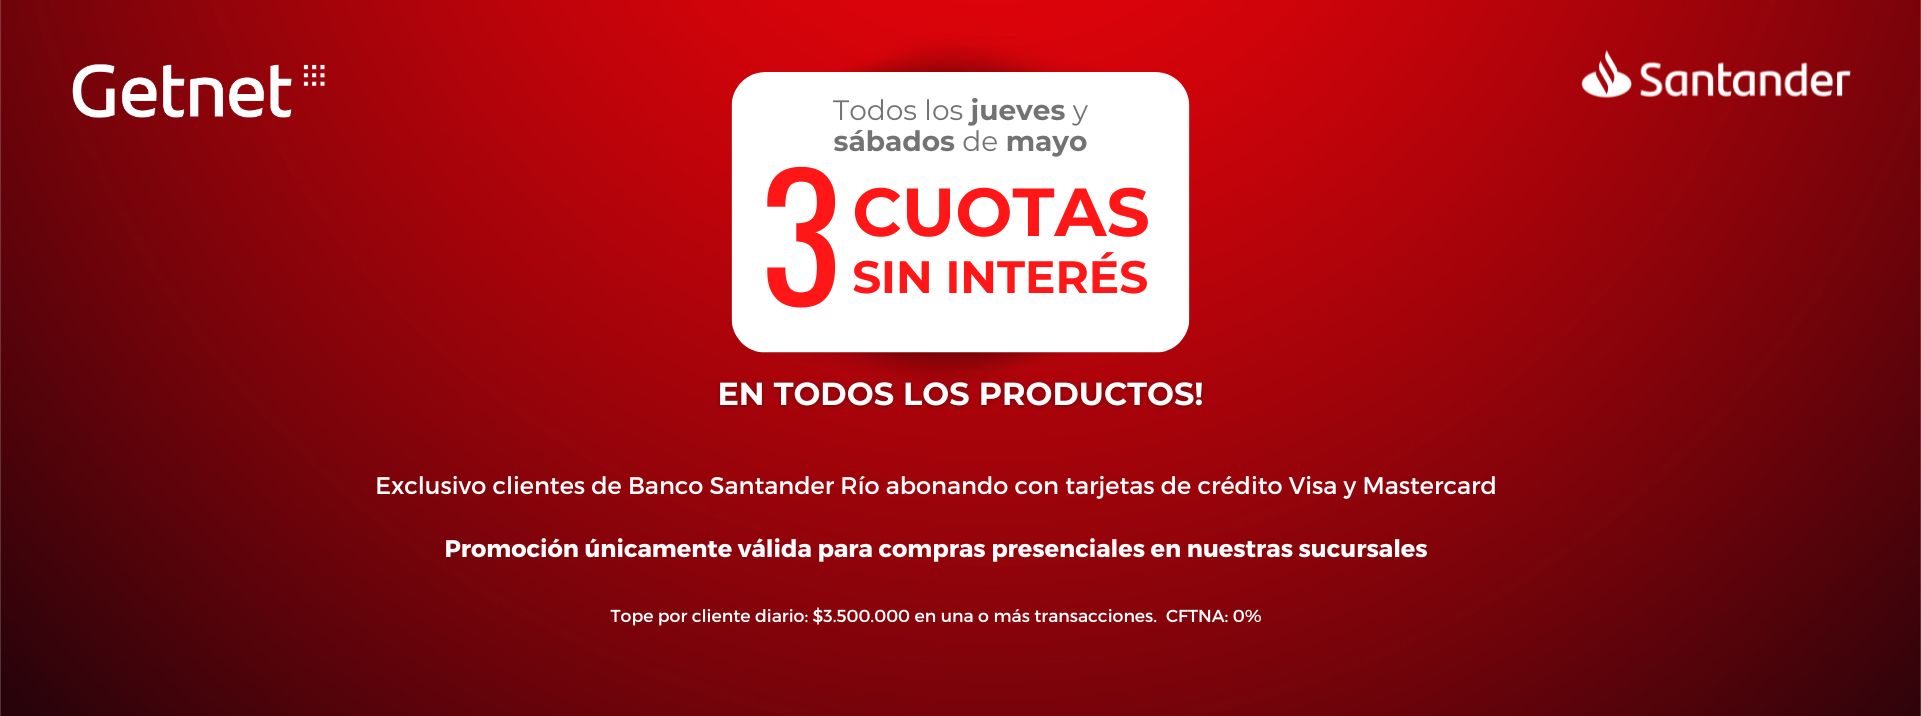 Promo Santander 